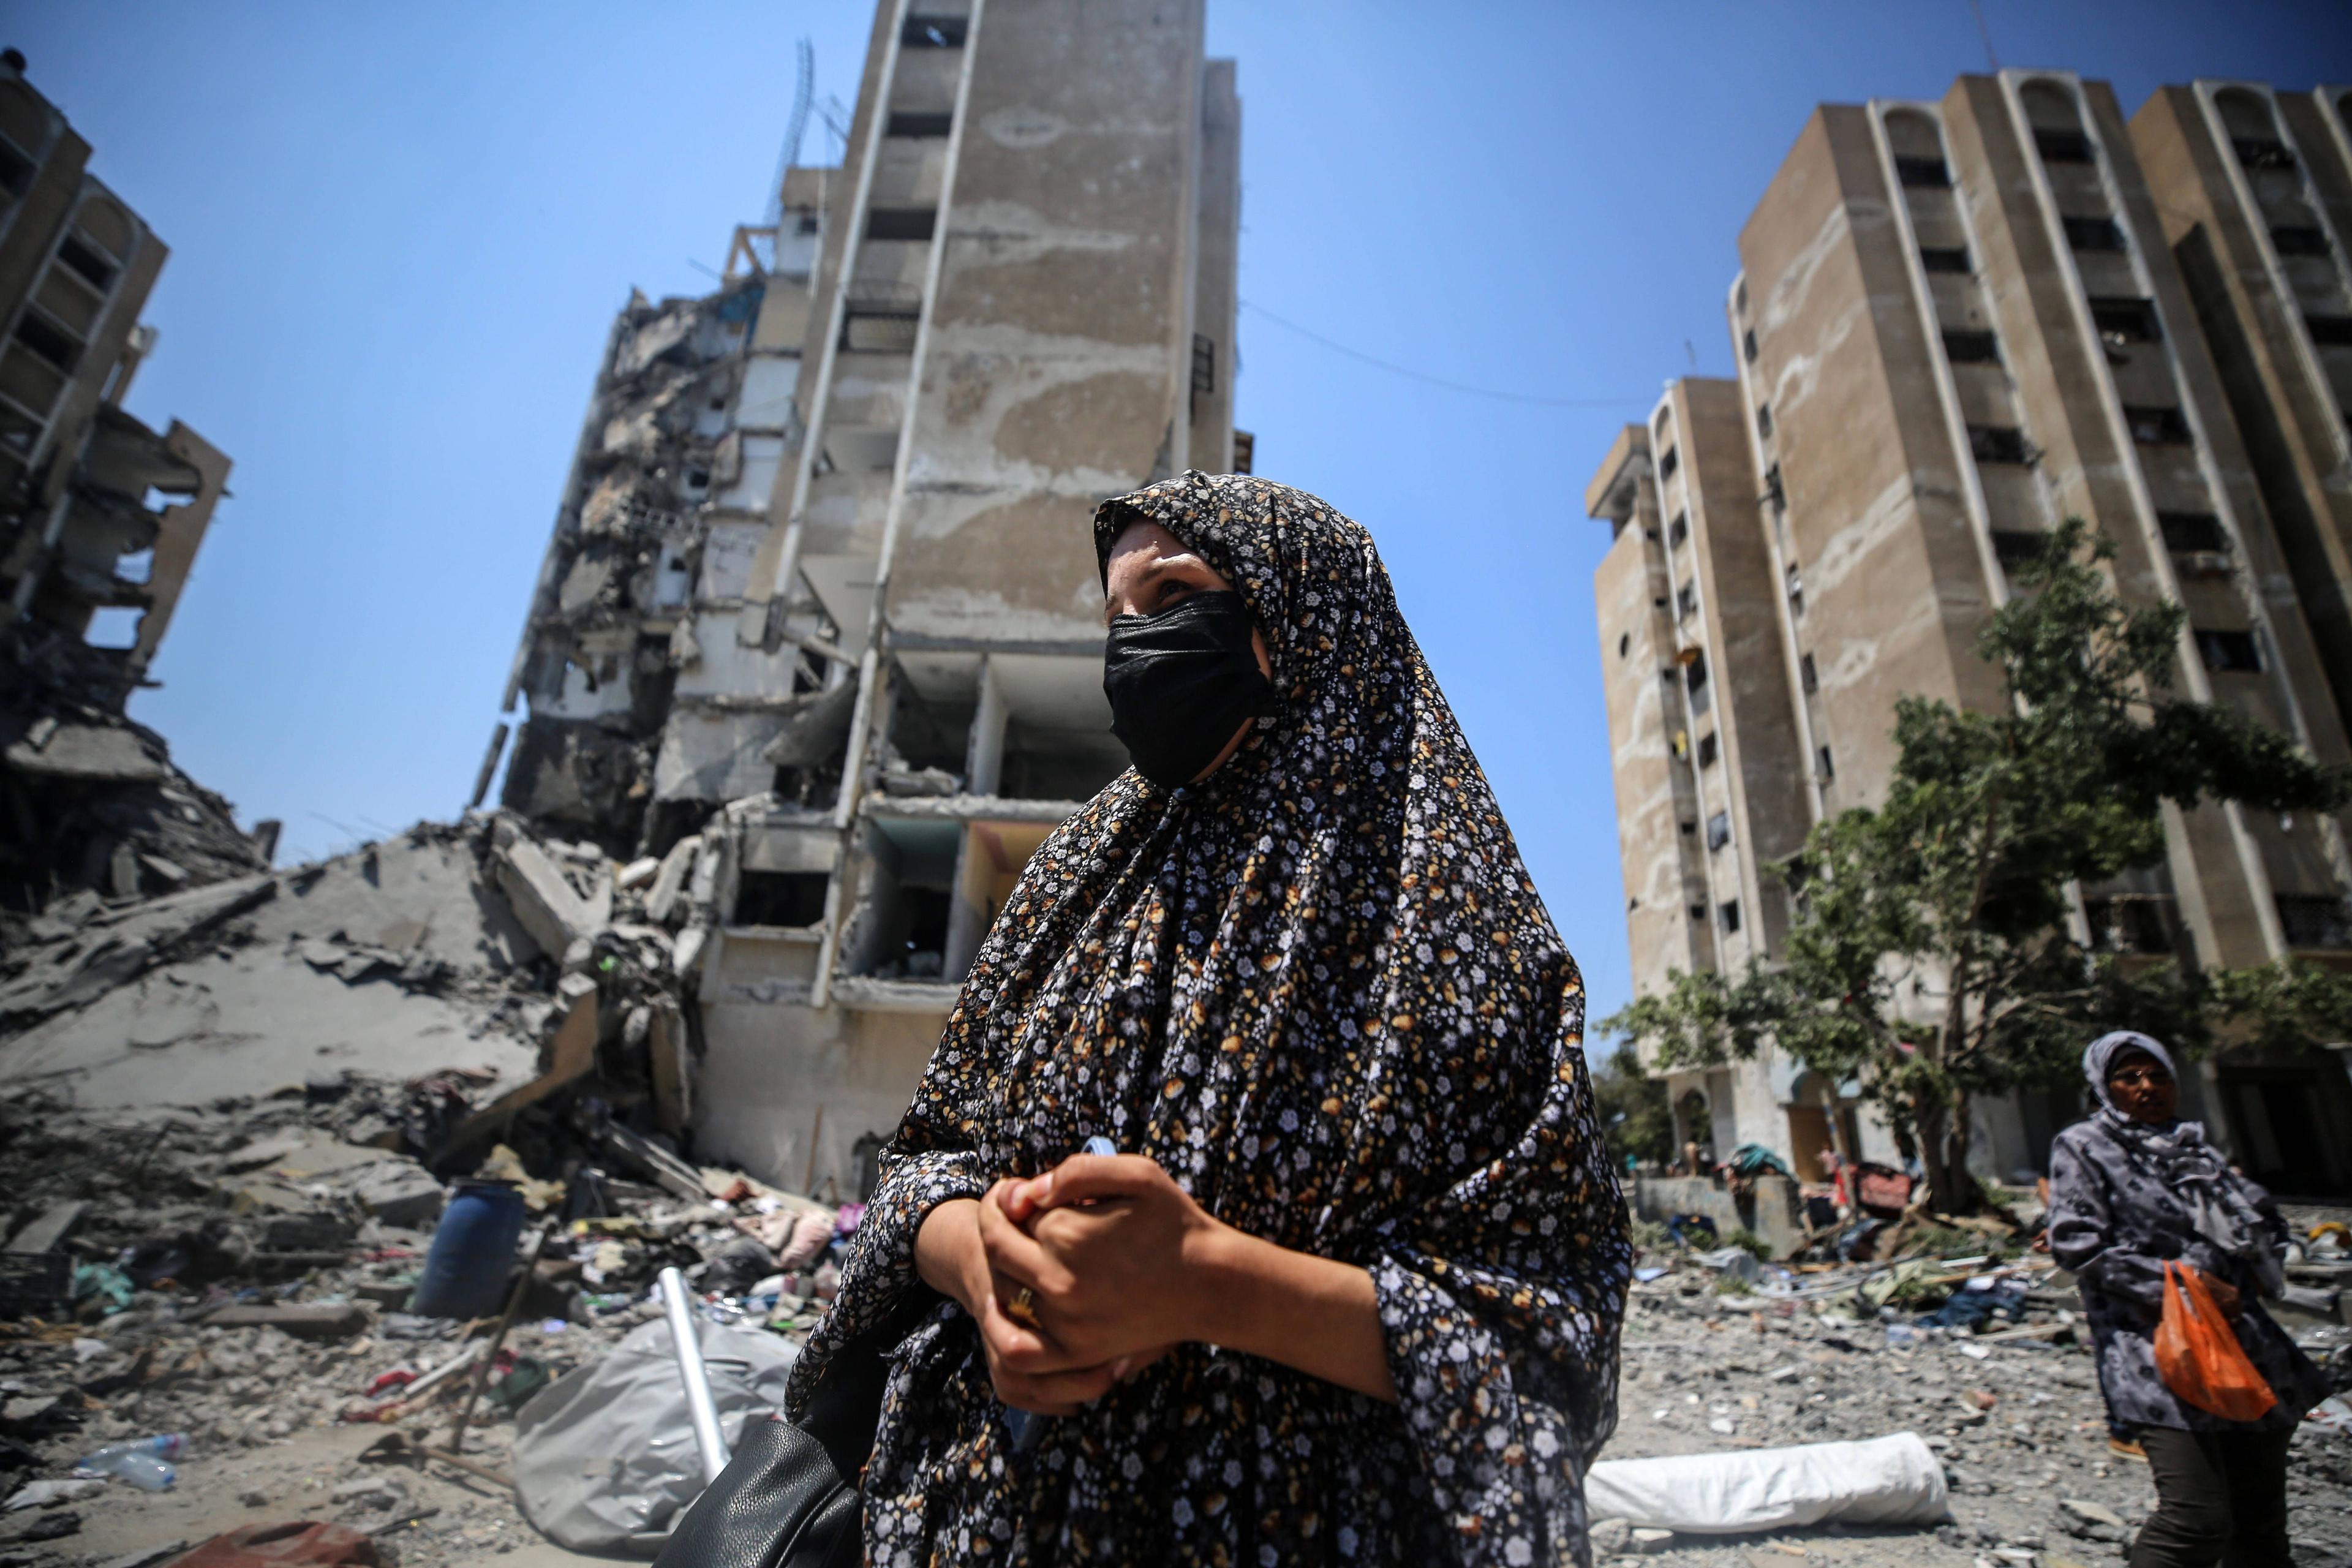 Das Ausmaß der Zerstörung, wie hier in Nuseirat, findet in der israelischen Presse kaum Erwähnung, so Matar.